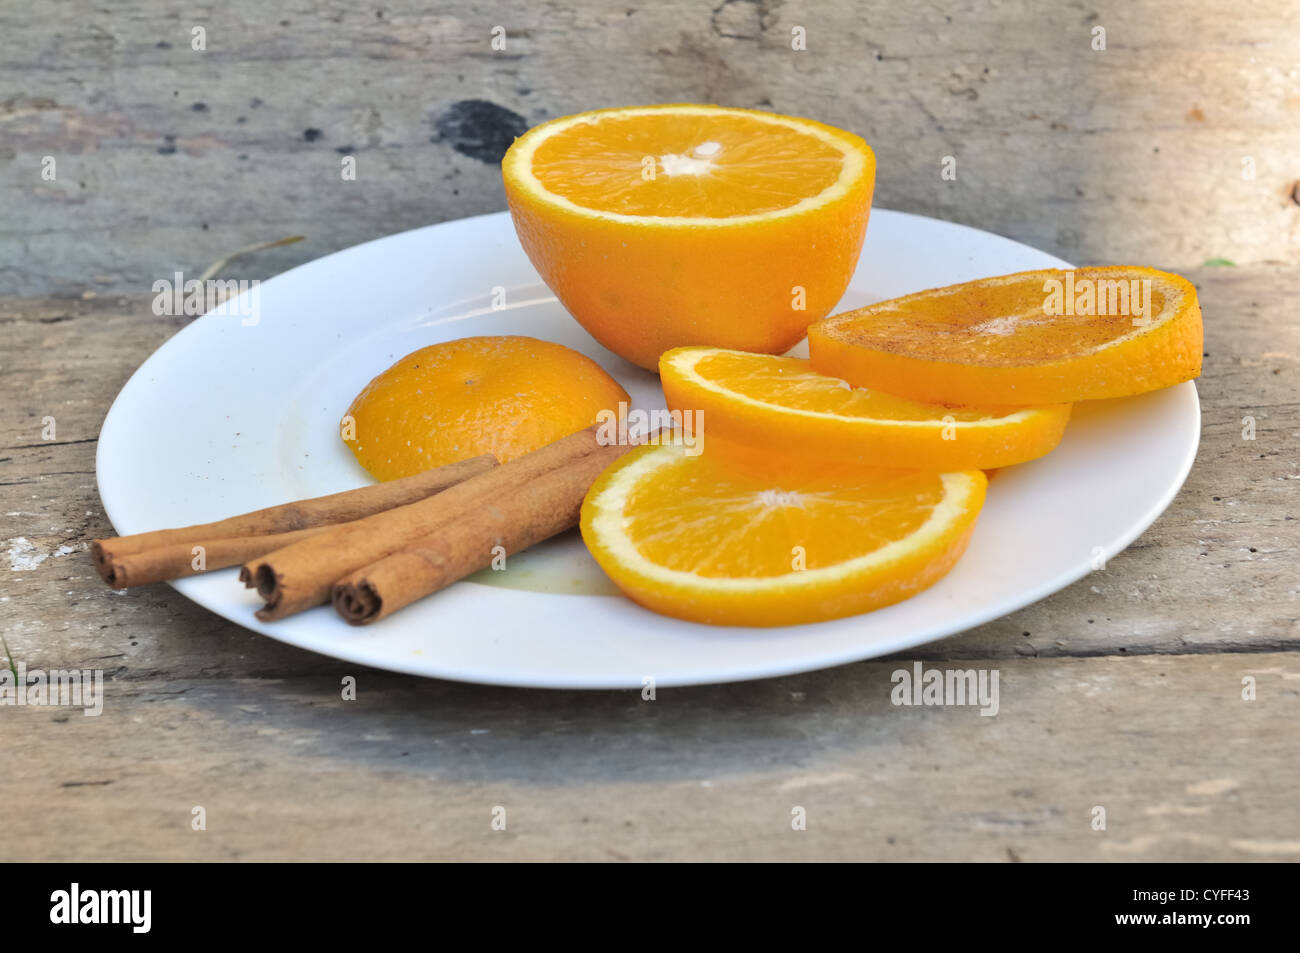 Orangenscheibe und Stangen Zimt auf einem Teller auf hölzernen Hintergrund Stockfoto